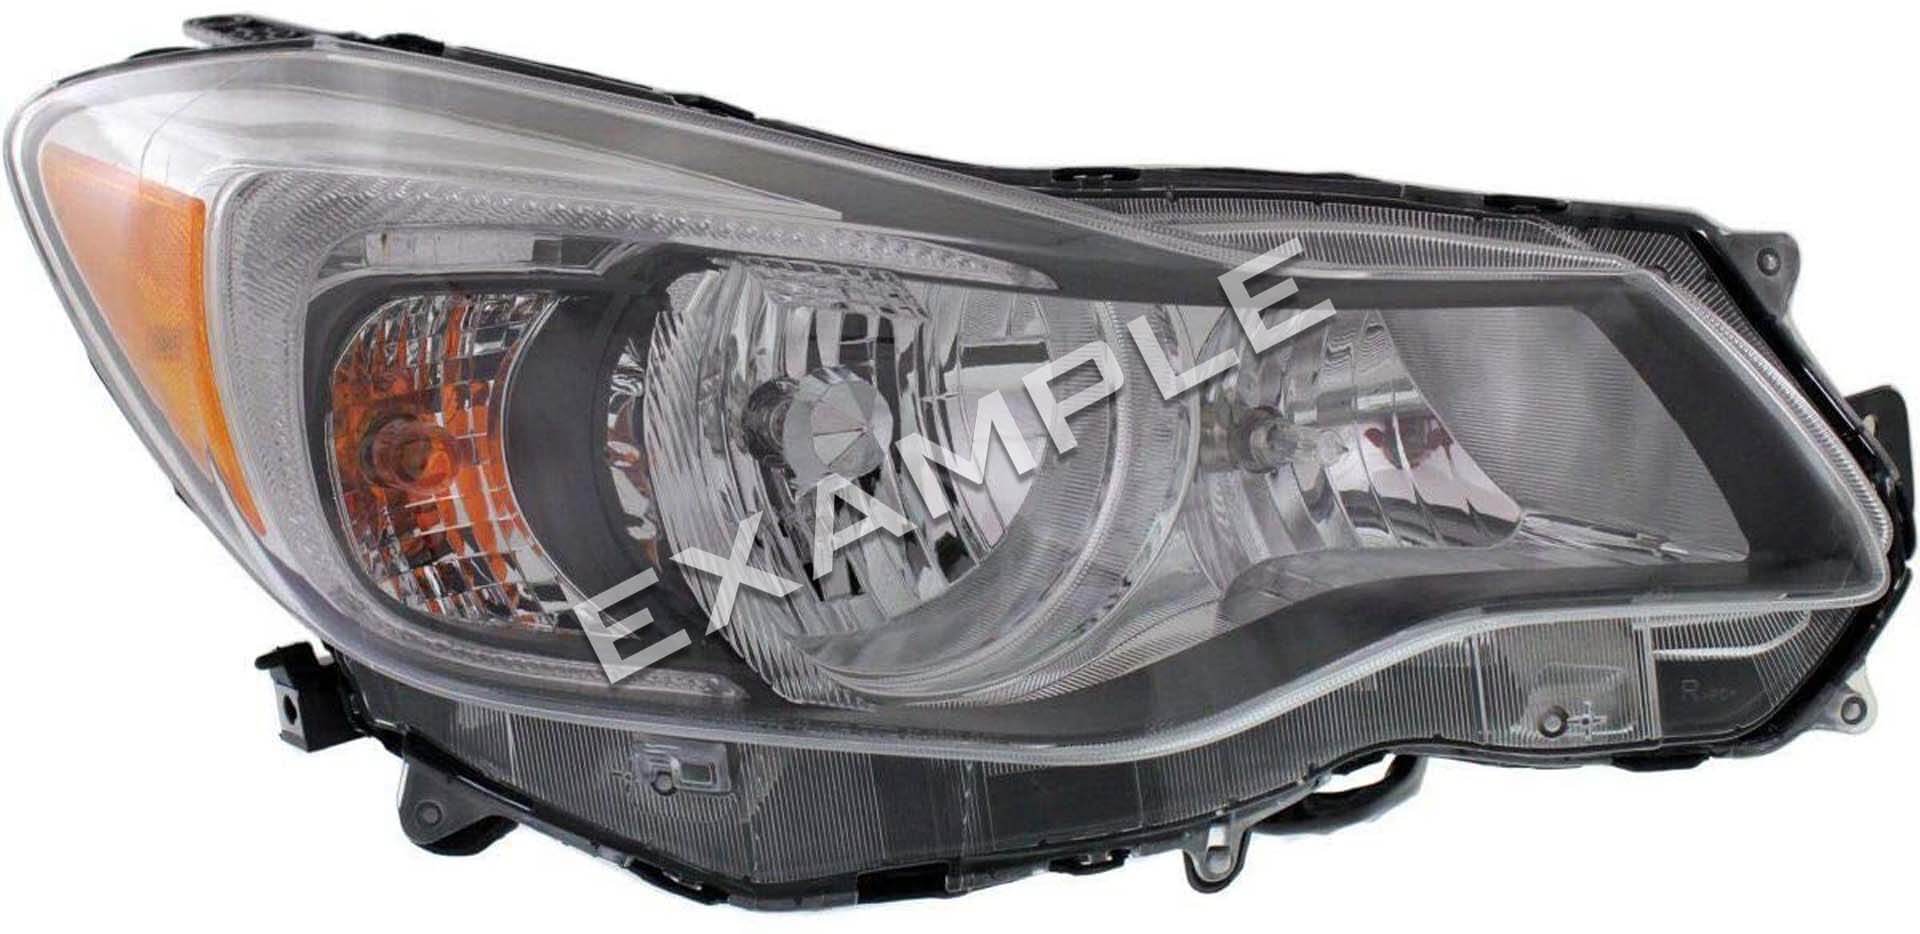 Subaru Impreza IV 12-18 bi-xenon licht upgrade kit voor halogeen koplampen